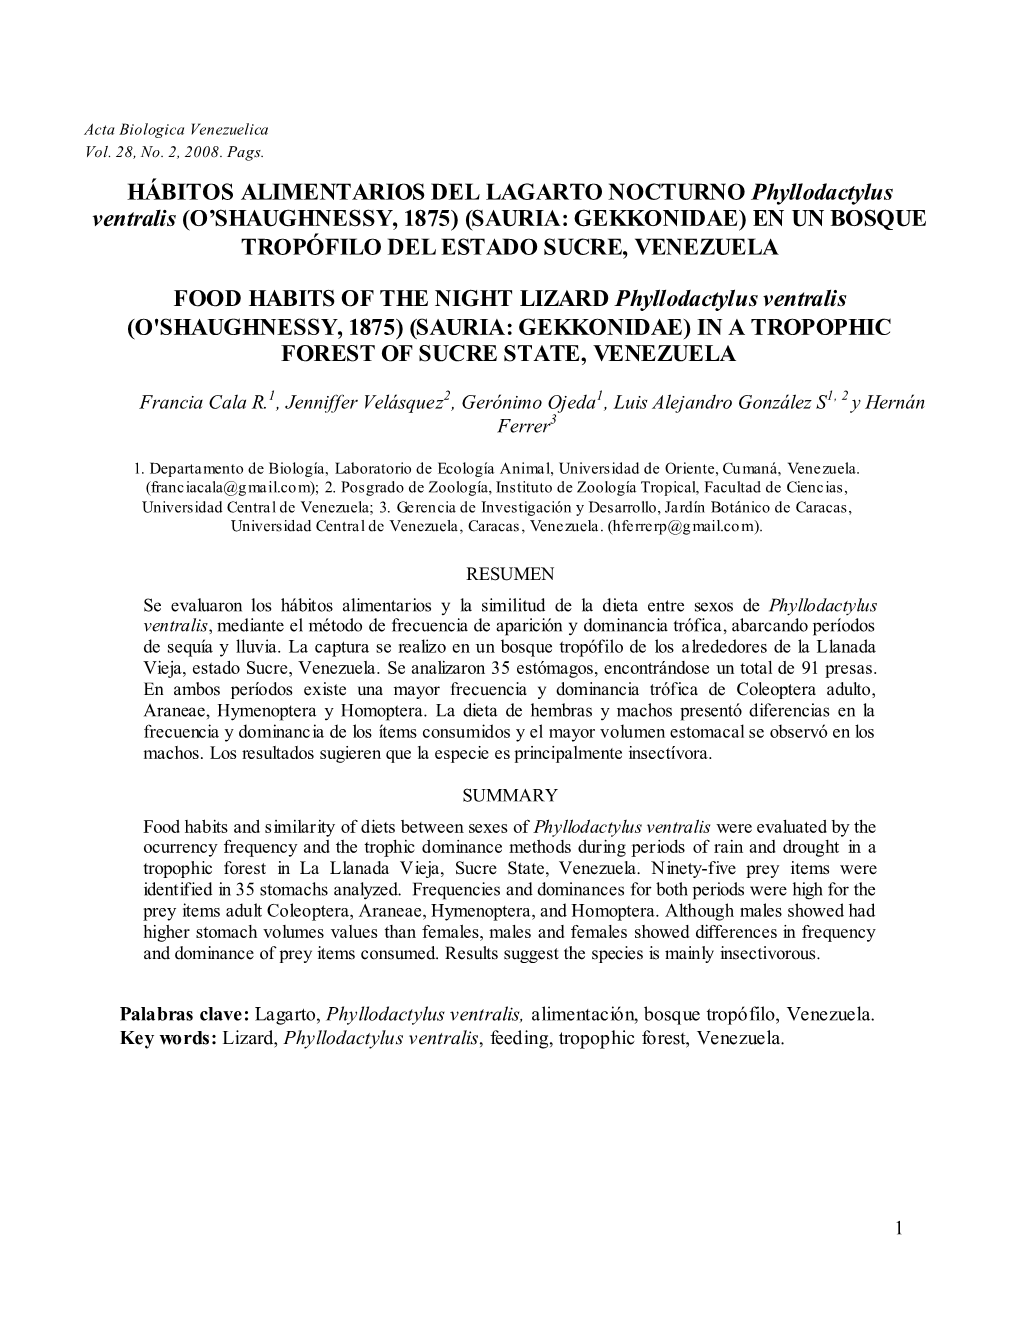 HÁBITOS ALIMENTARIOS DEL LAGARTO NOCTURNO Phyllodactylus Ventralis (O’SHAUGHNESSY, 1875) (SAURIA: GEKKONIDAE) EN UN BOSQUE TROPÓFILO DEL ESTADO SUCRE, VENEZUELA